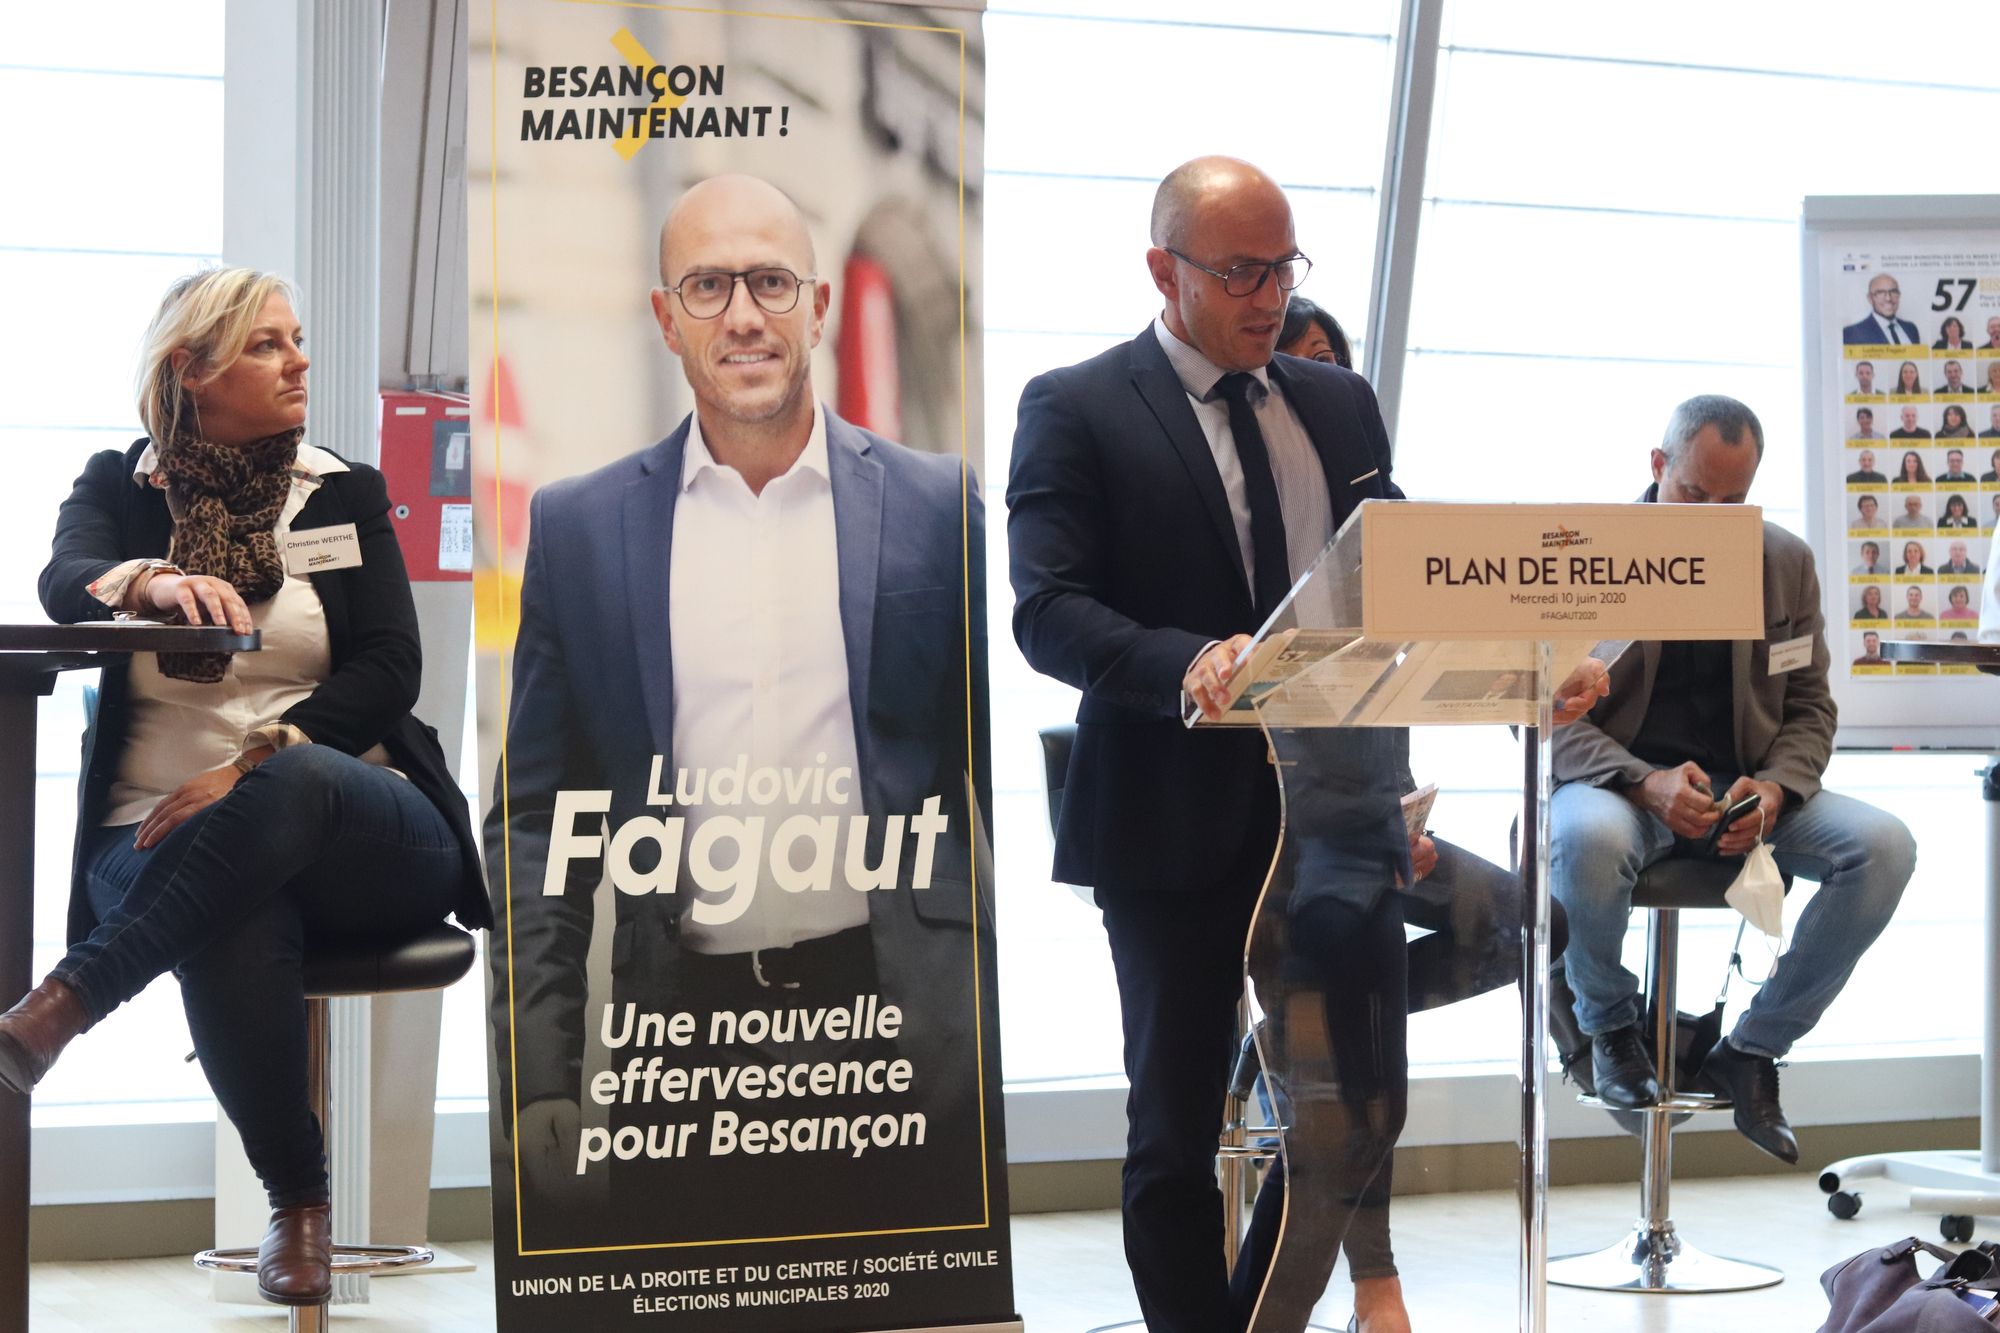 Besançon. Municipales : Ludovic Fagaut (Besançon Maintenant) présente son plan de relance